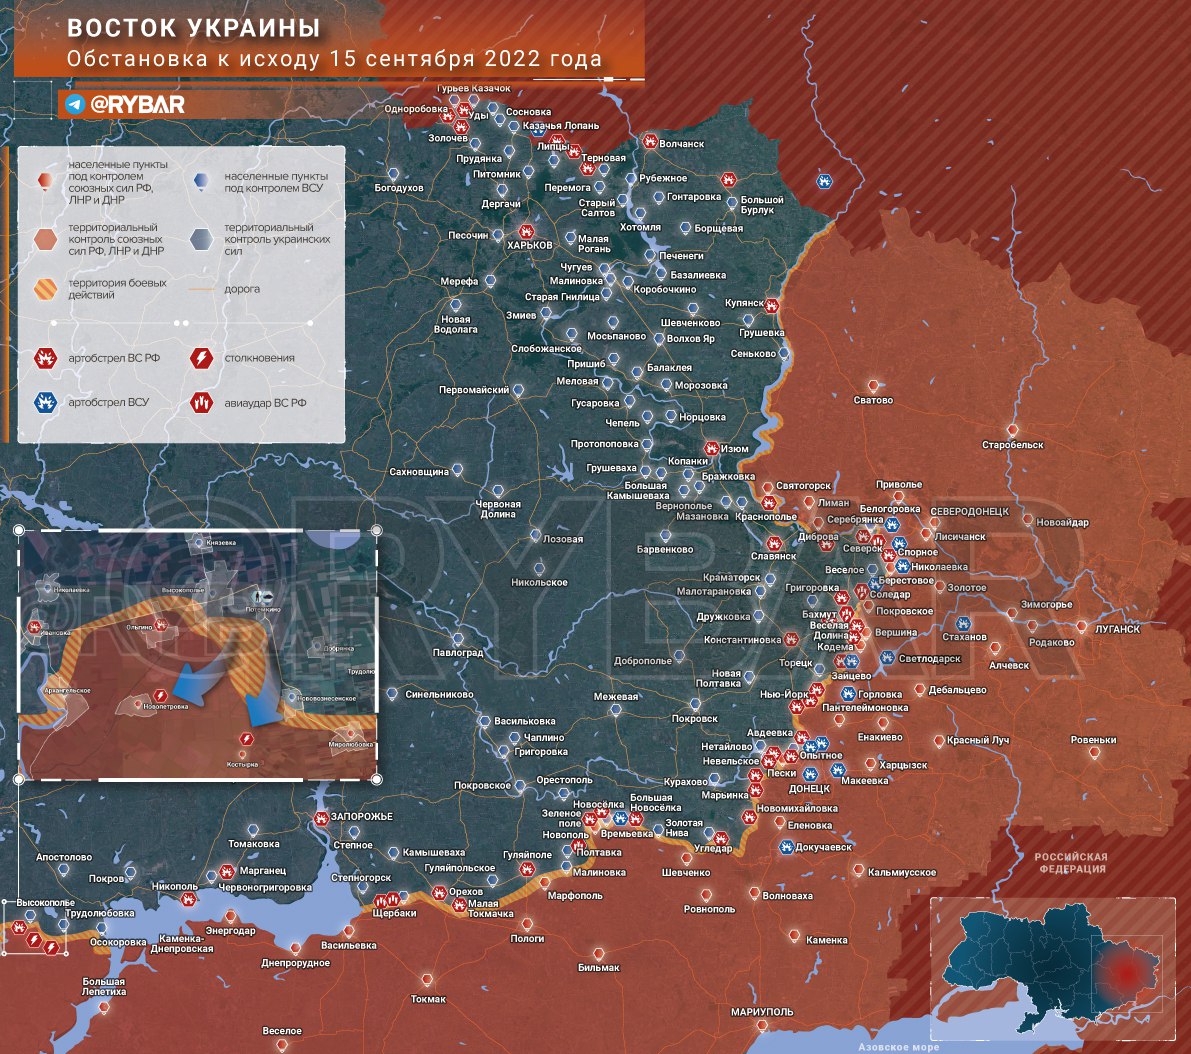 Mappa del conflitto aggiornata al 15 settembre 2022 (fonte Rybar)